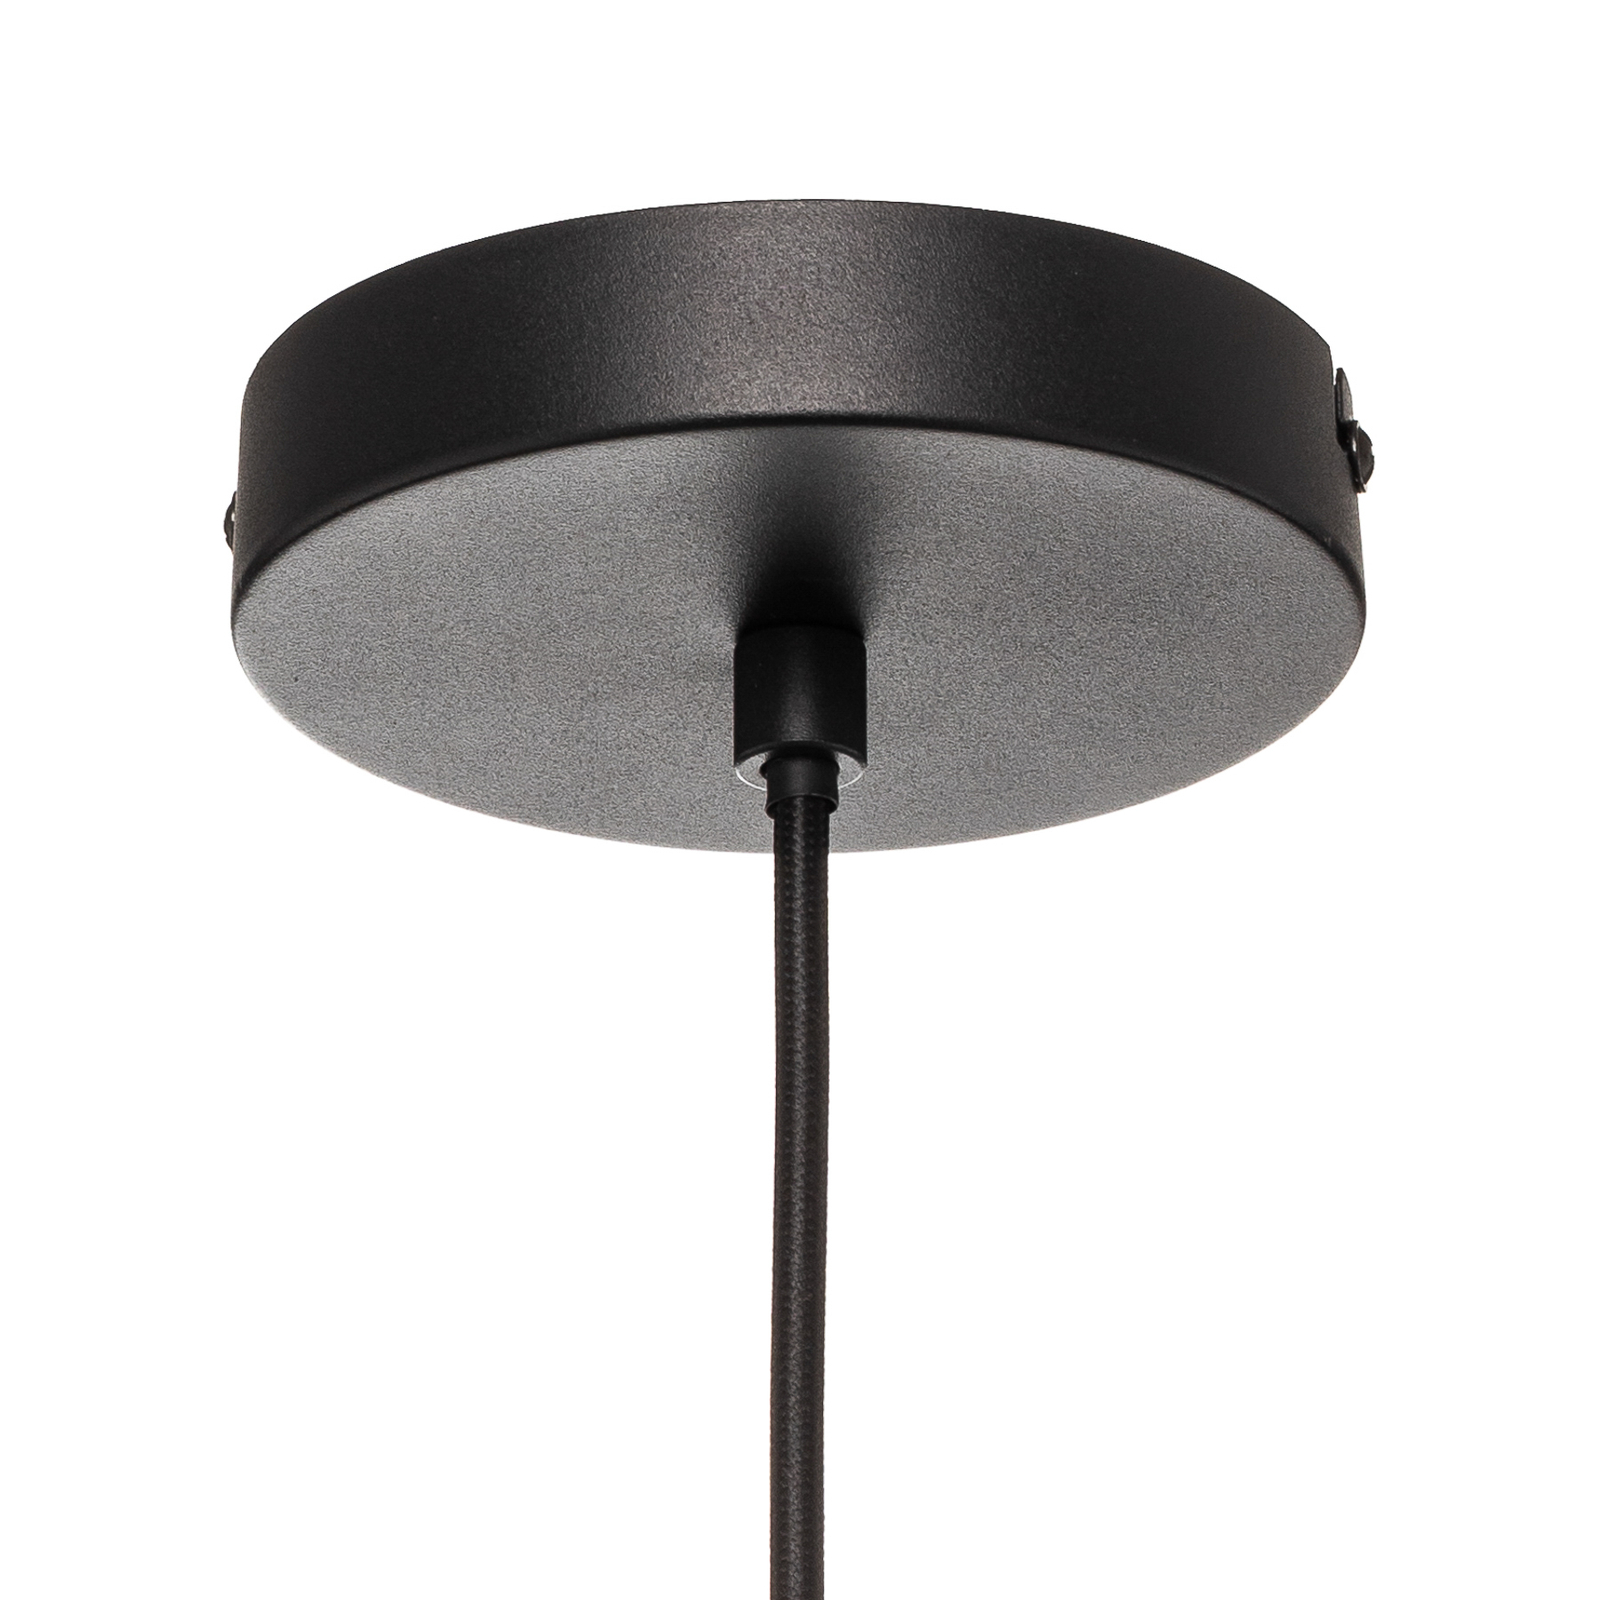 Lucande Kellina hanglamp in zwart